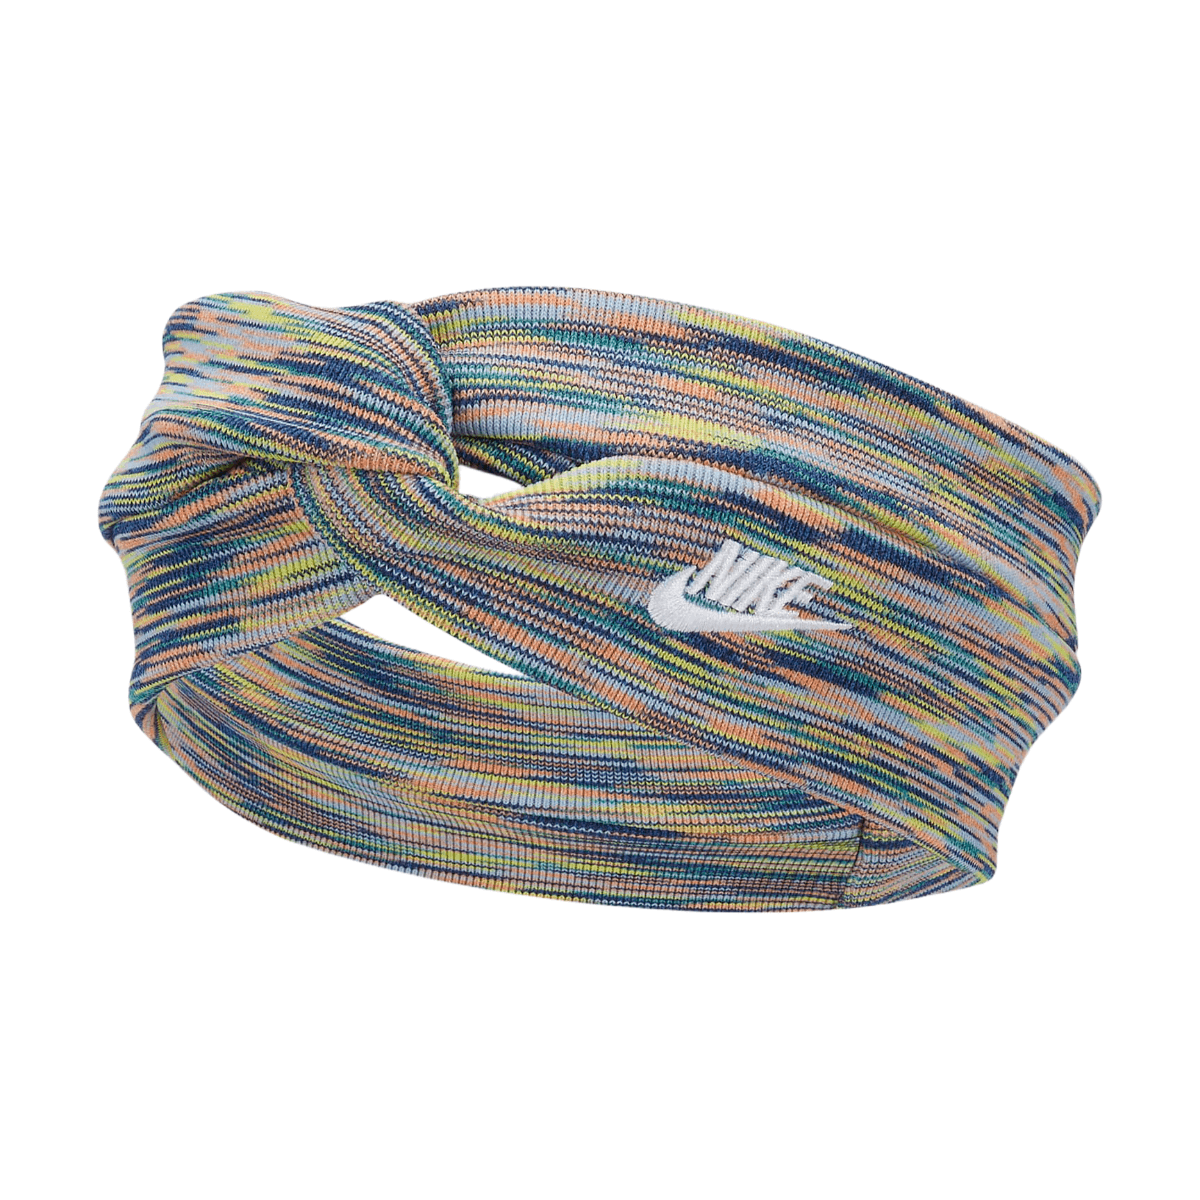 Nike Twist Knot Craft Knit Headband Women's -